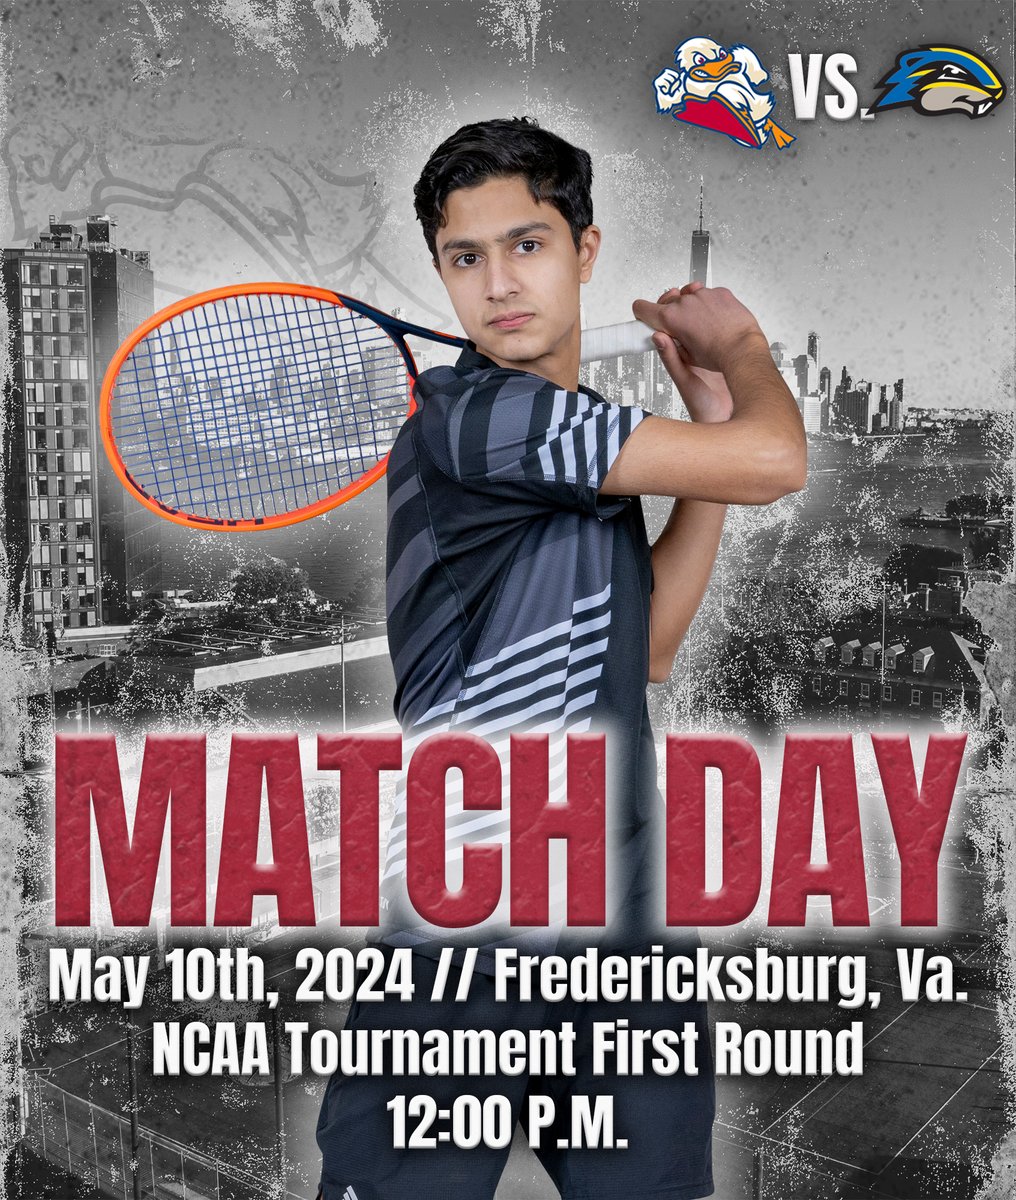 NCAA Tournament match day! @Ducks_Tennis 

🆚 Goucher
⏰ 12 PM
📍 Fredericksburg, Va.
📊 tinyurl.com/46j42m52

#AllRise #MACtennis #d3tennis